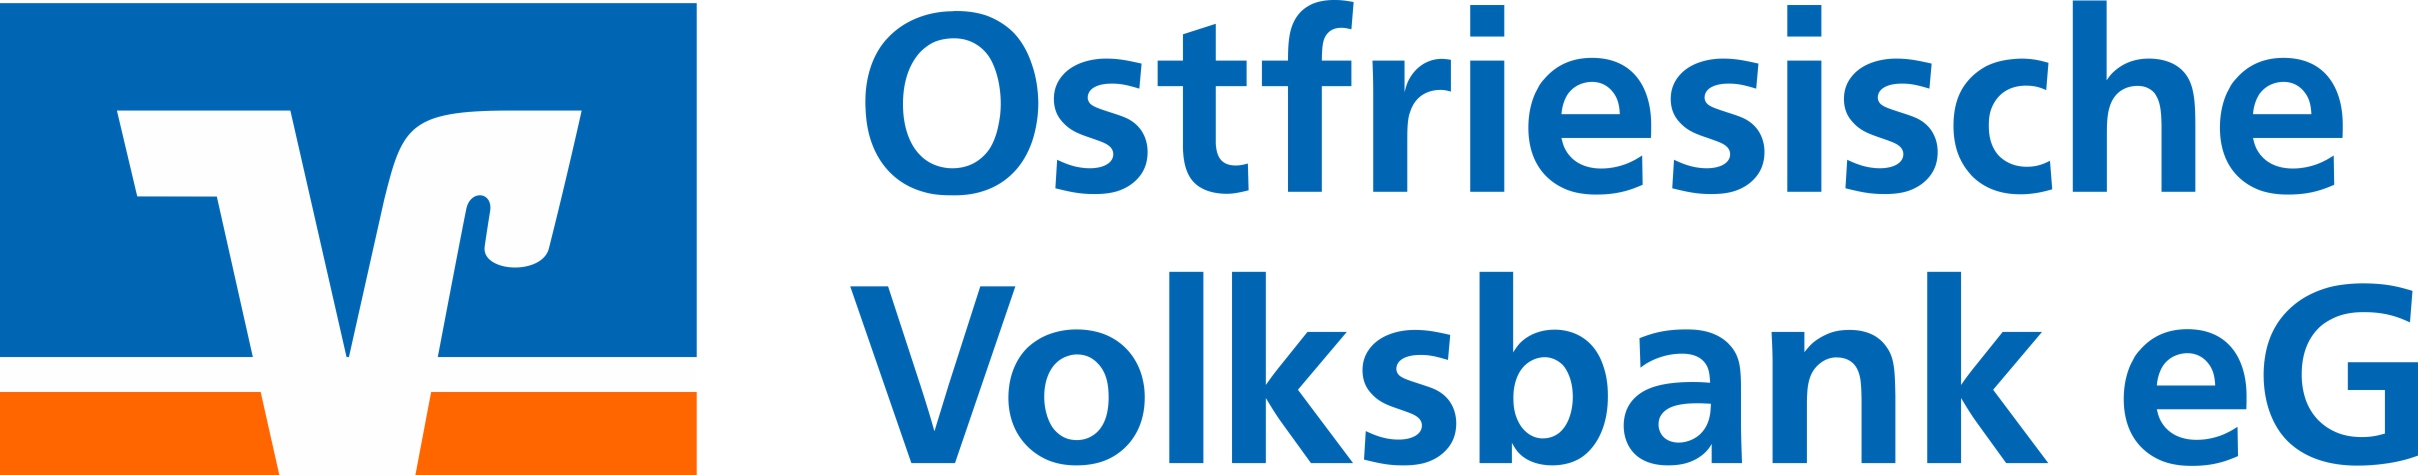 Logo Ostfriesische Volksbank eG RGB zweizeilig links pos